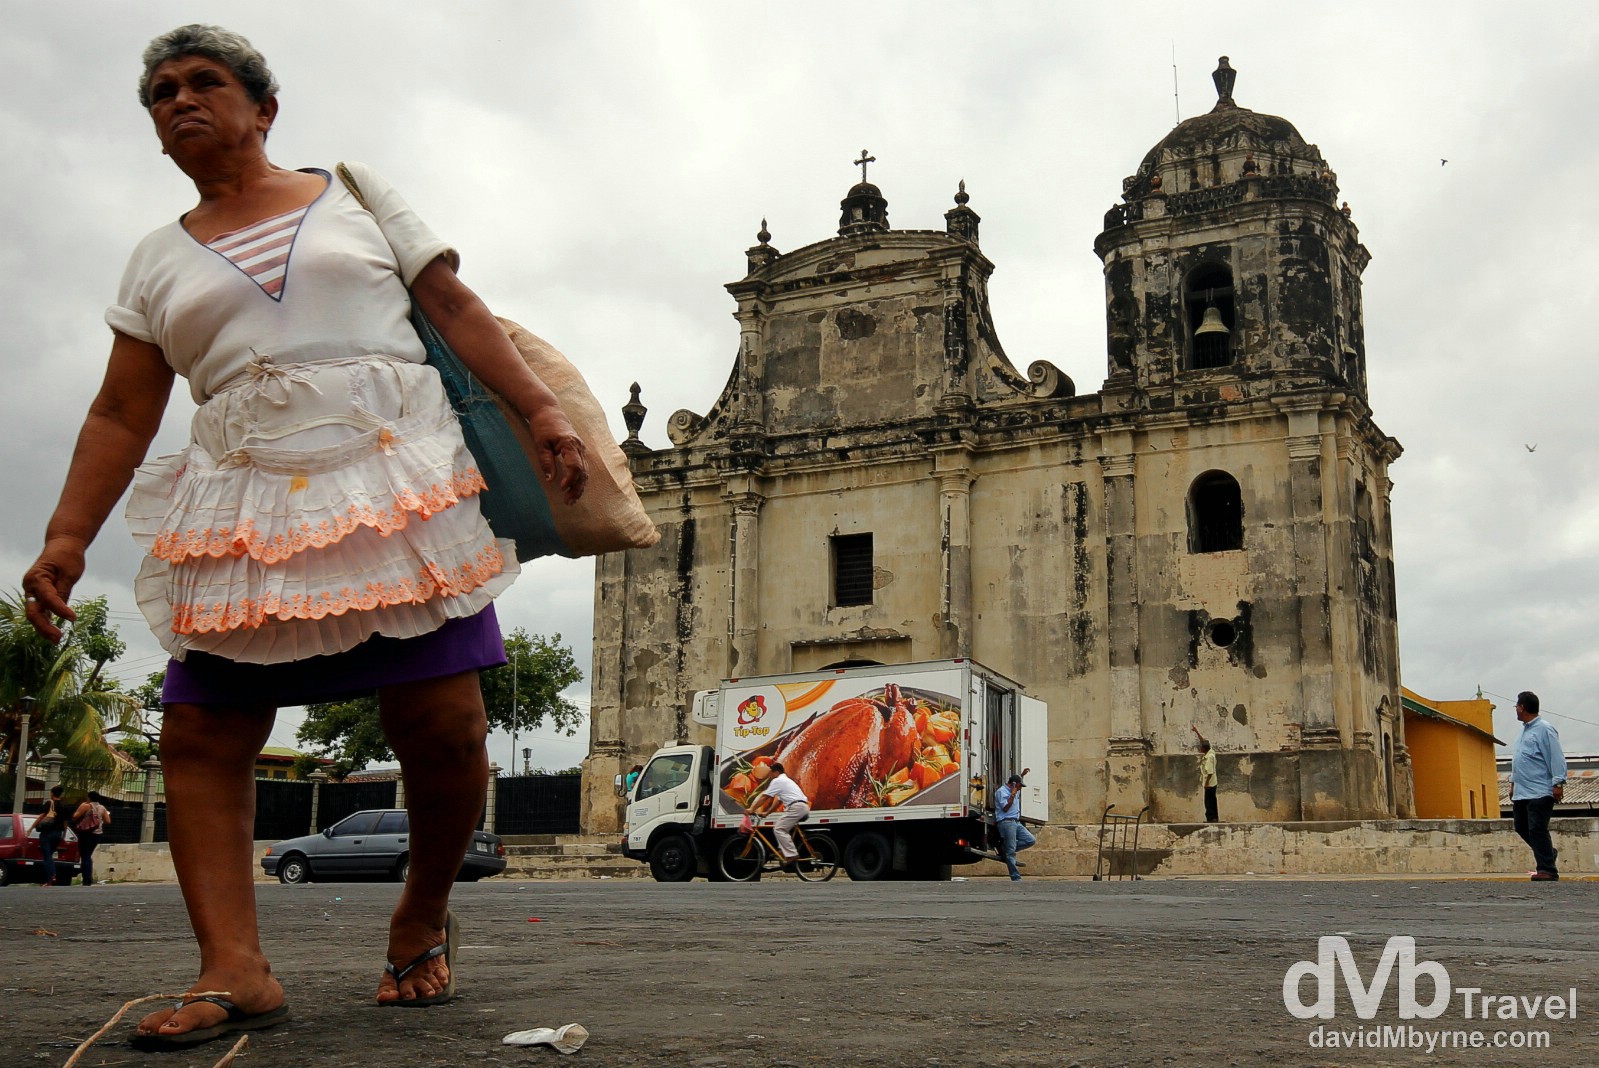 Fronting the 1625 (rebuilt in 1860) Iglesia de San Juan in Leon, Nicaragua. June 15th 2013.